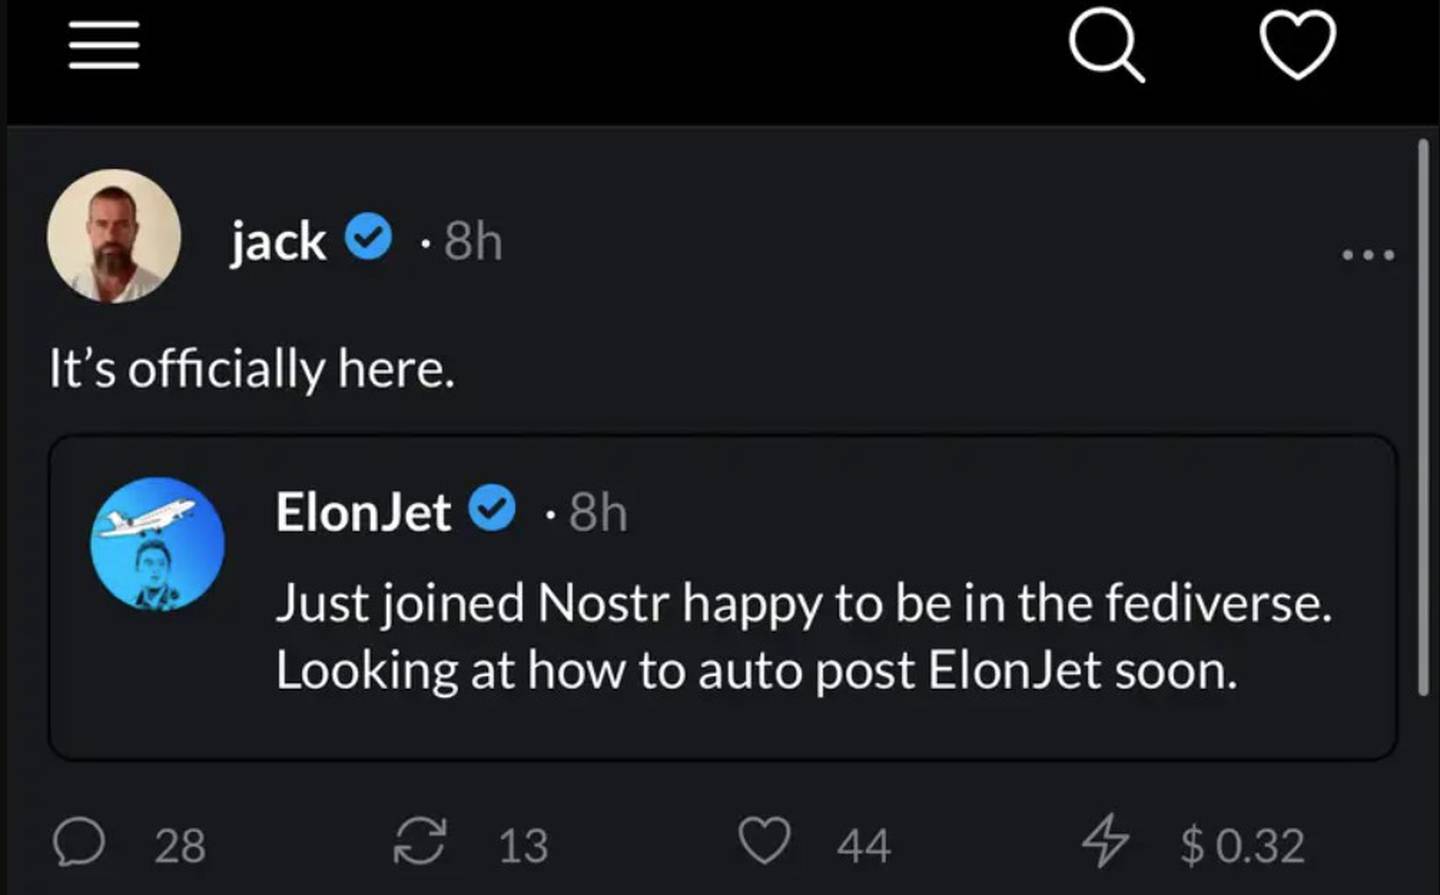 A screenshot of Jack Dorsey welcoming @ElonJet to Nostr